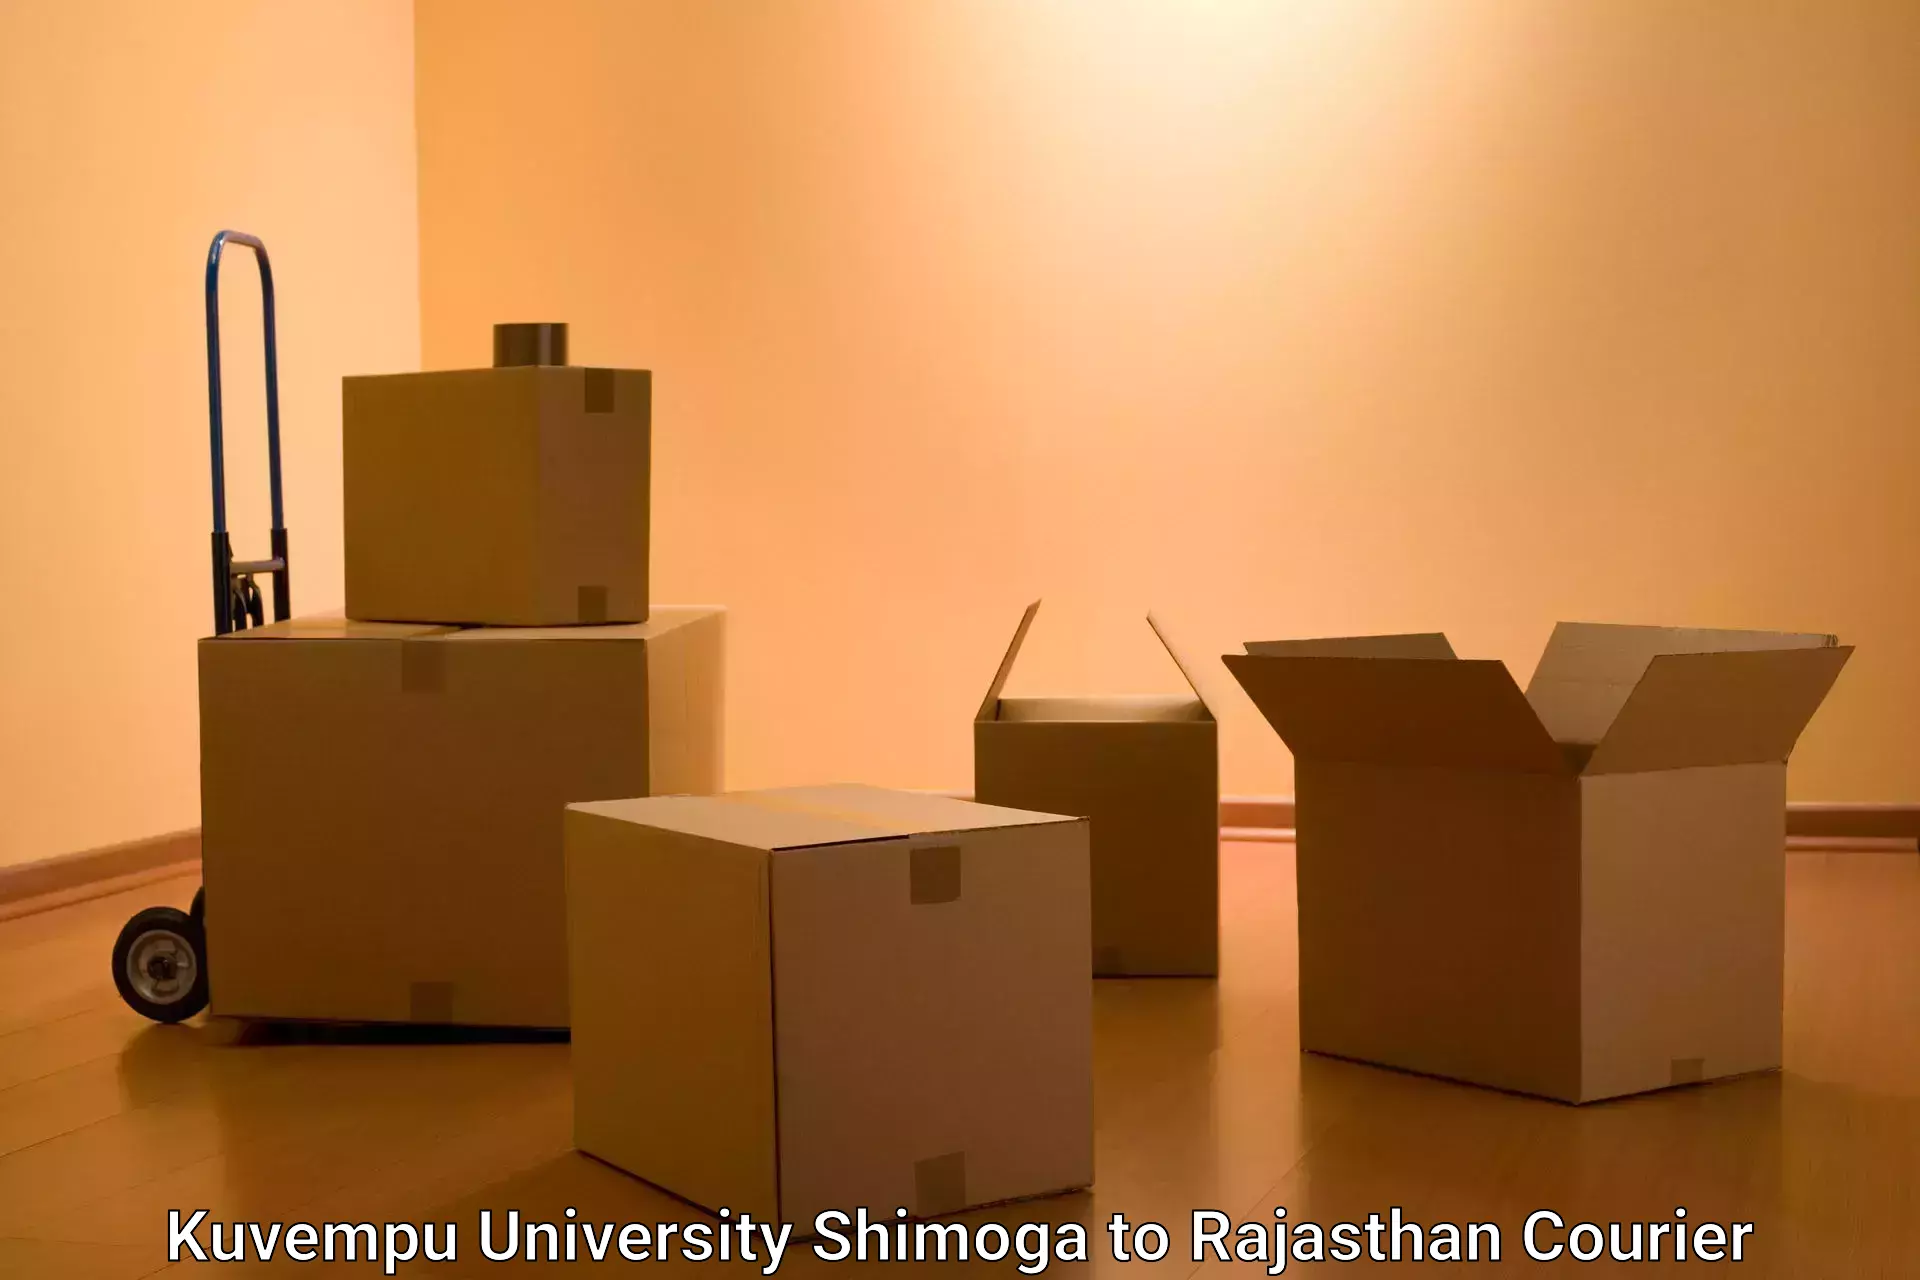 Round-the-clock parcel delivery Kuvempu University Shimoga to Banasthali Vidyapith